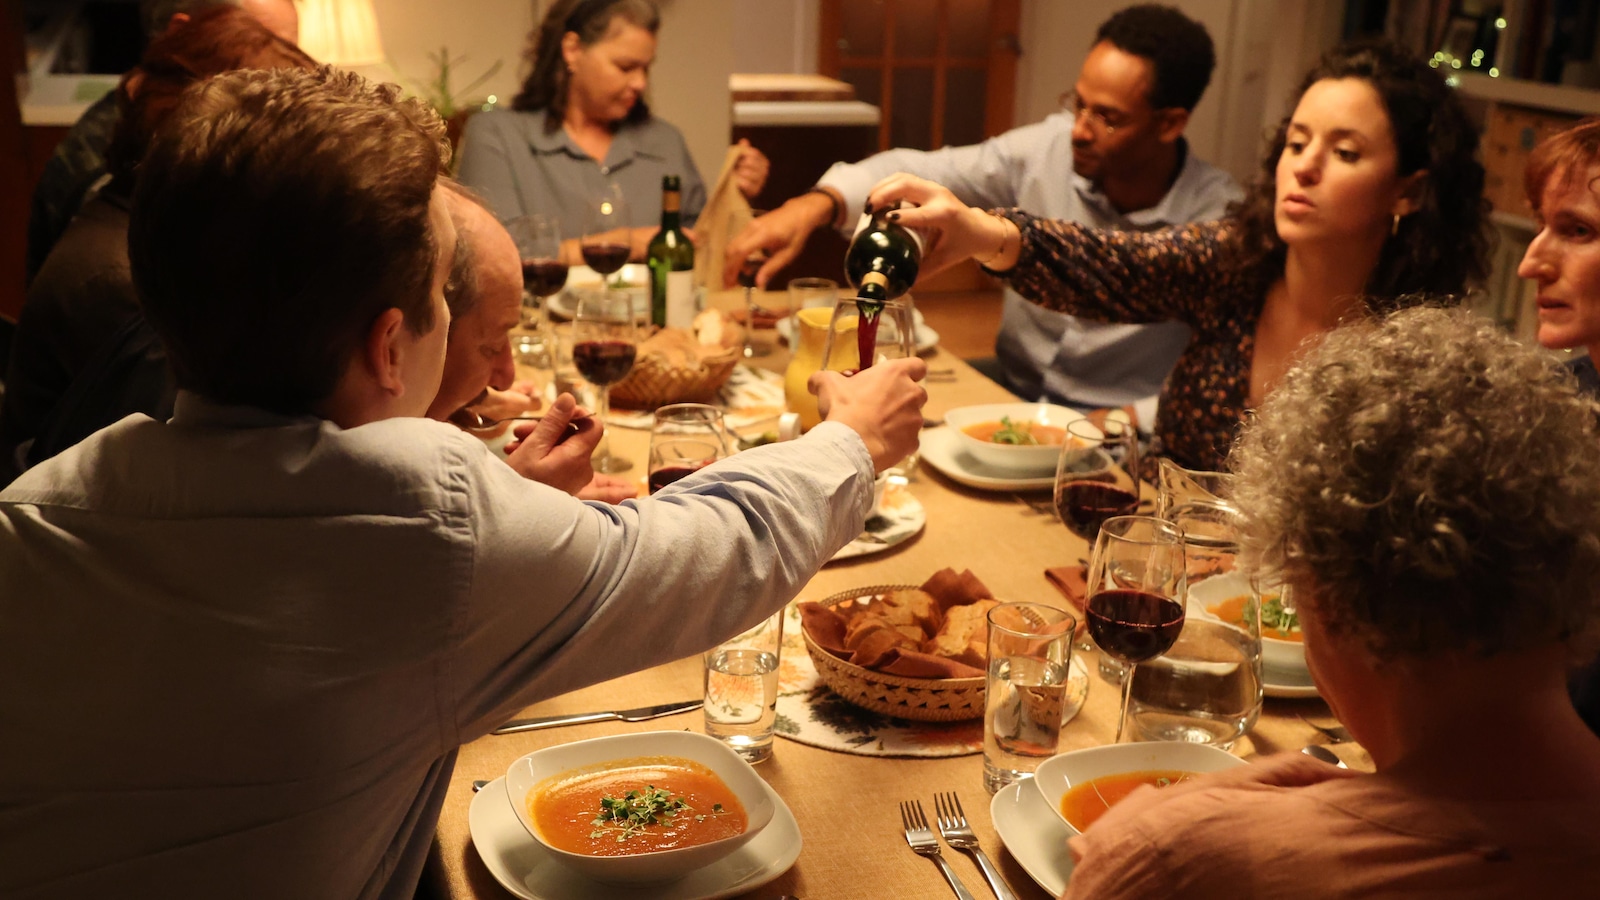 Plusieurs personnes partagent un repas autour d'une table et une personne sert du vin rouge à un des invités. 